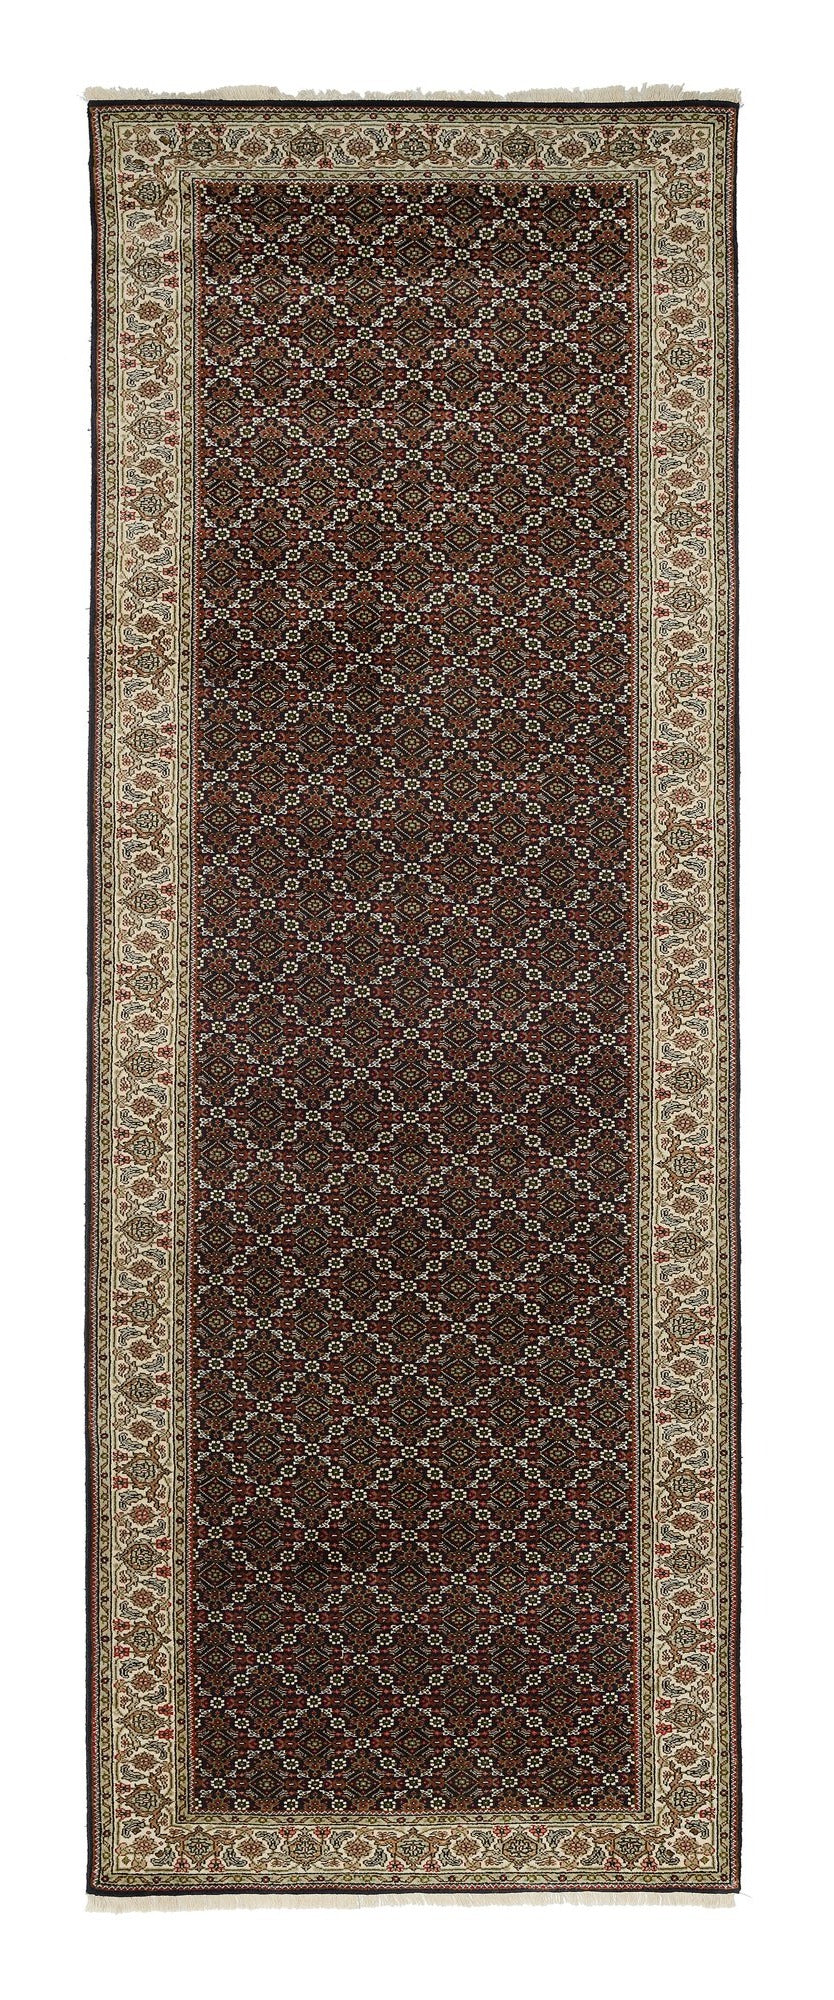 OCI Teppich CAVARI HERATI schwarz-creme Läufer echter klassischer Orient-Teppich handgeknüpft